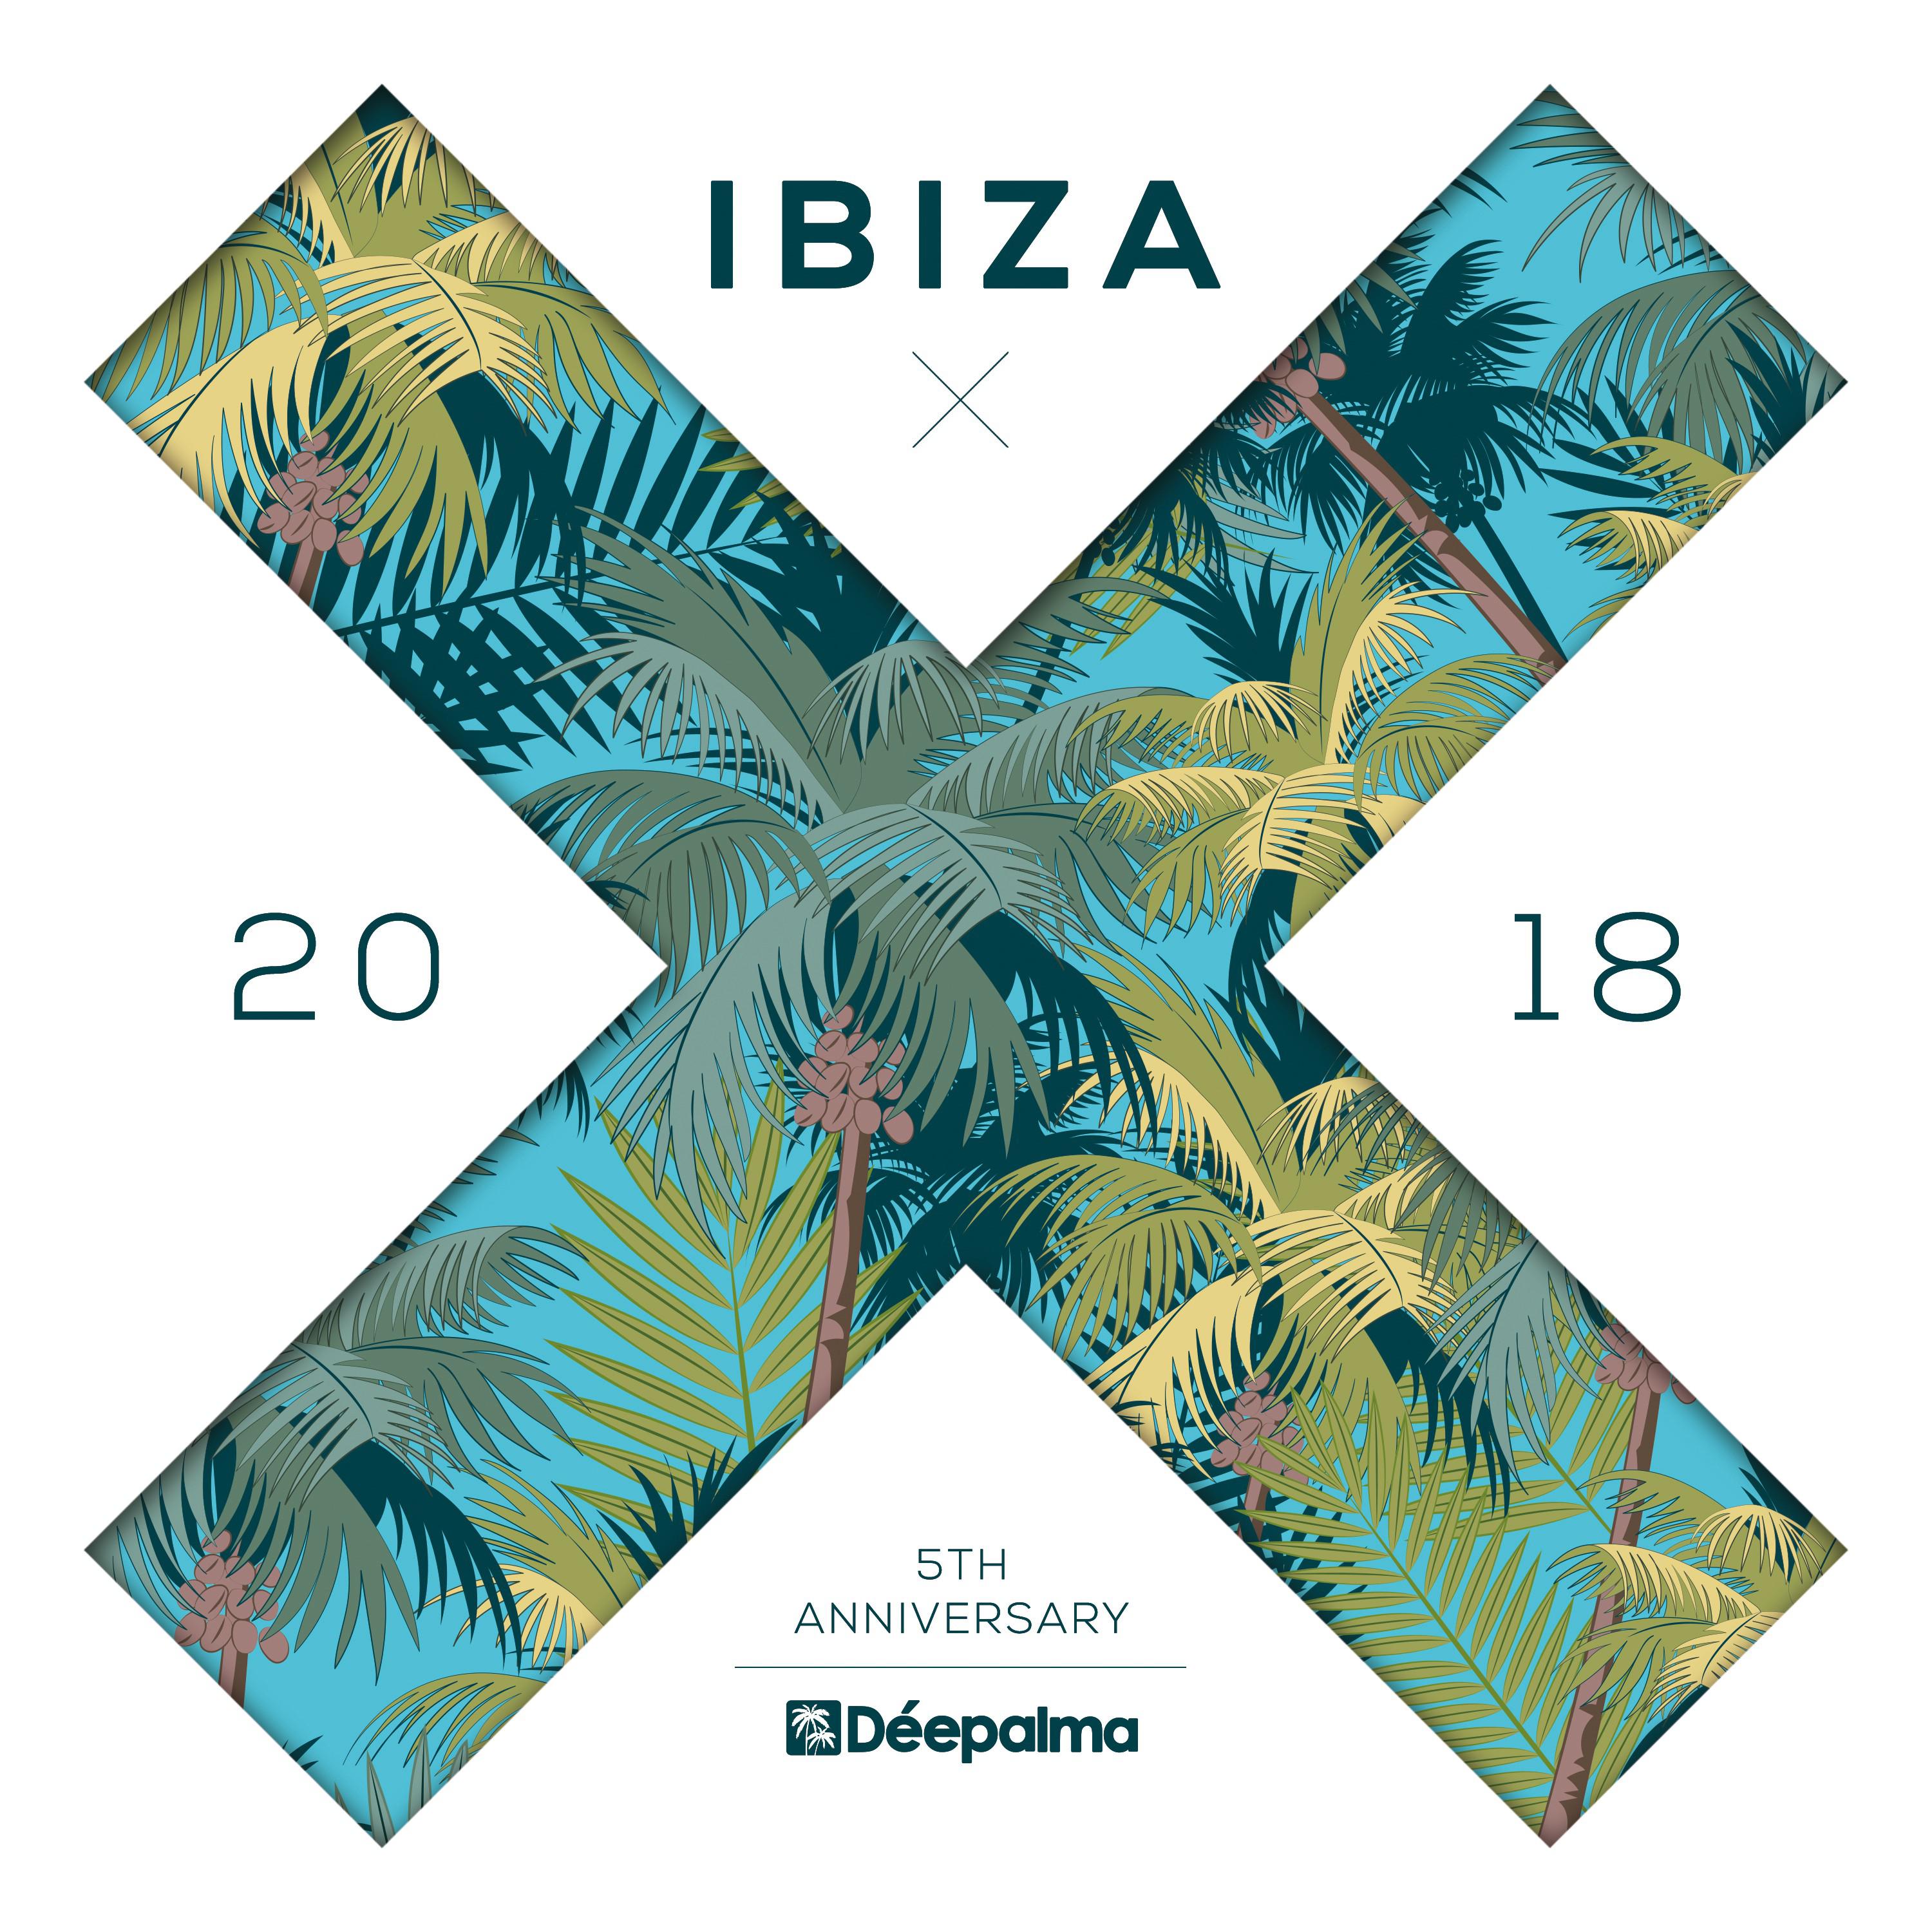 De epalma Ibiza 2018